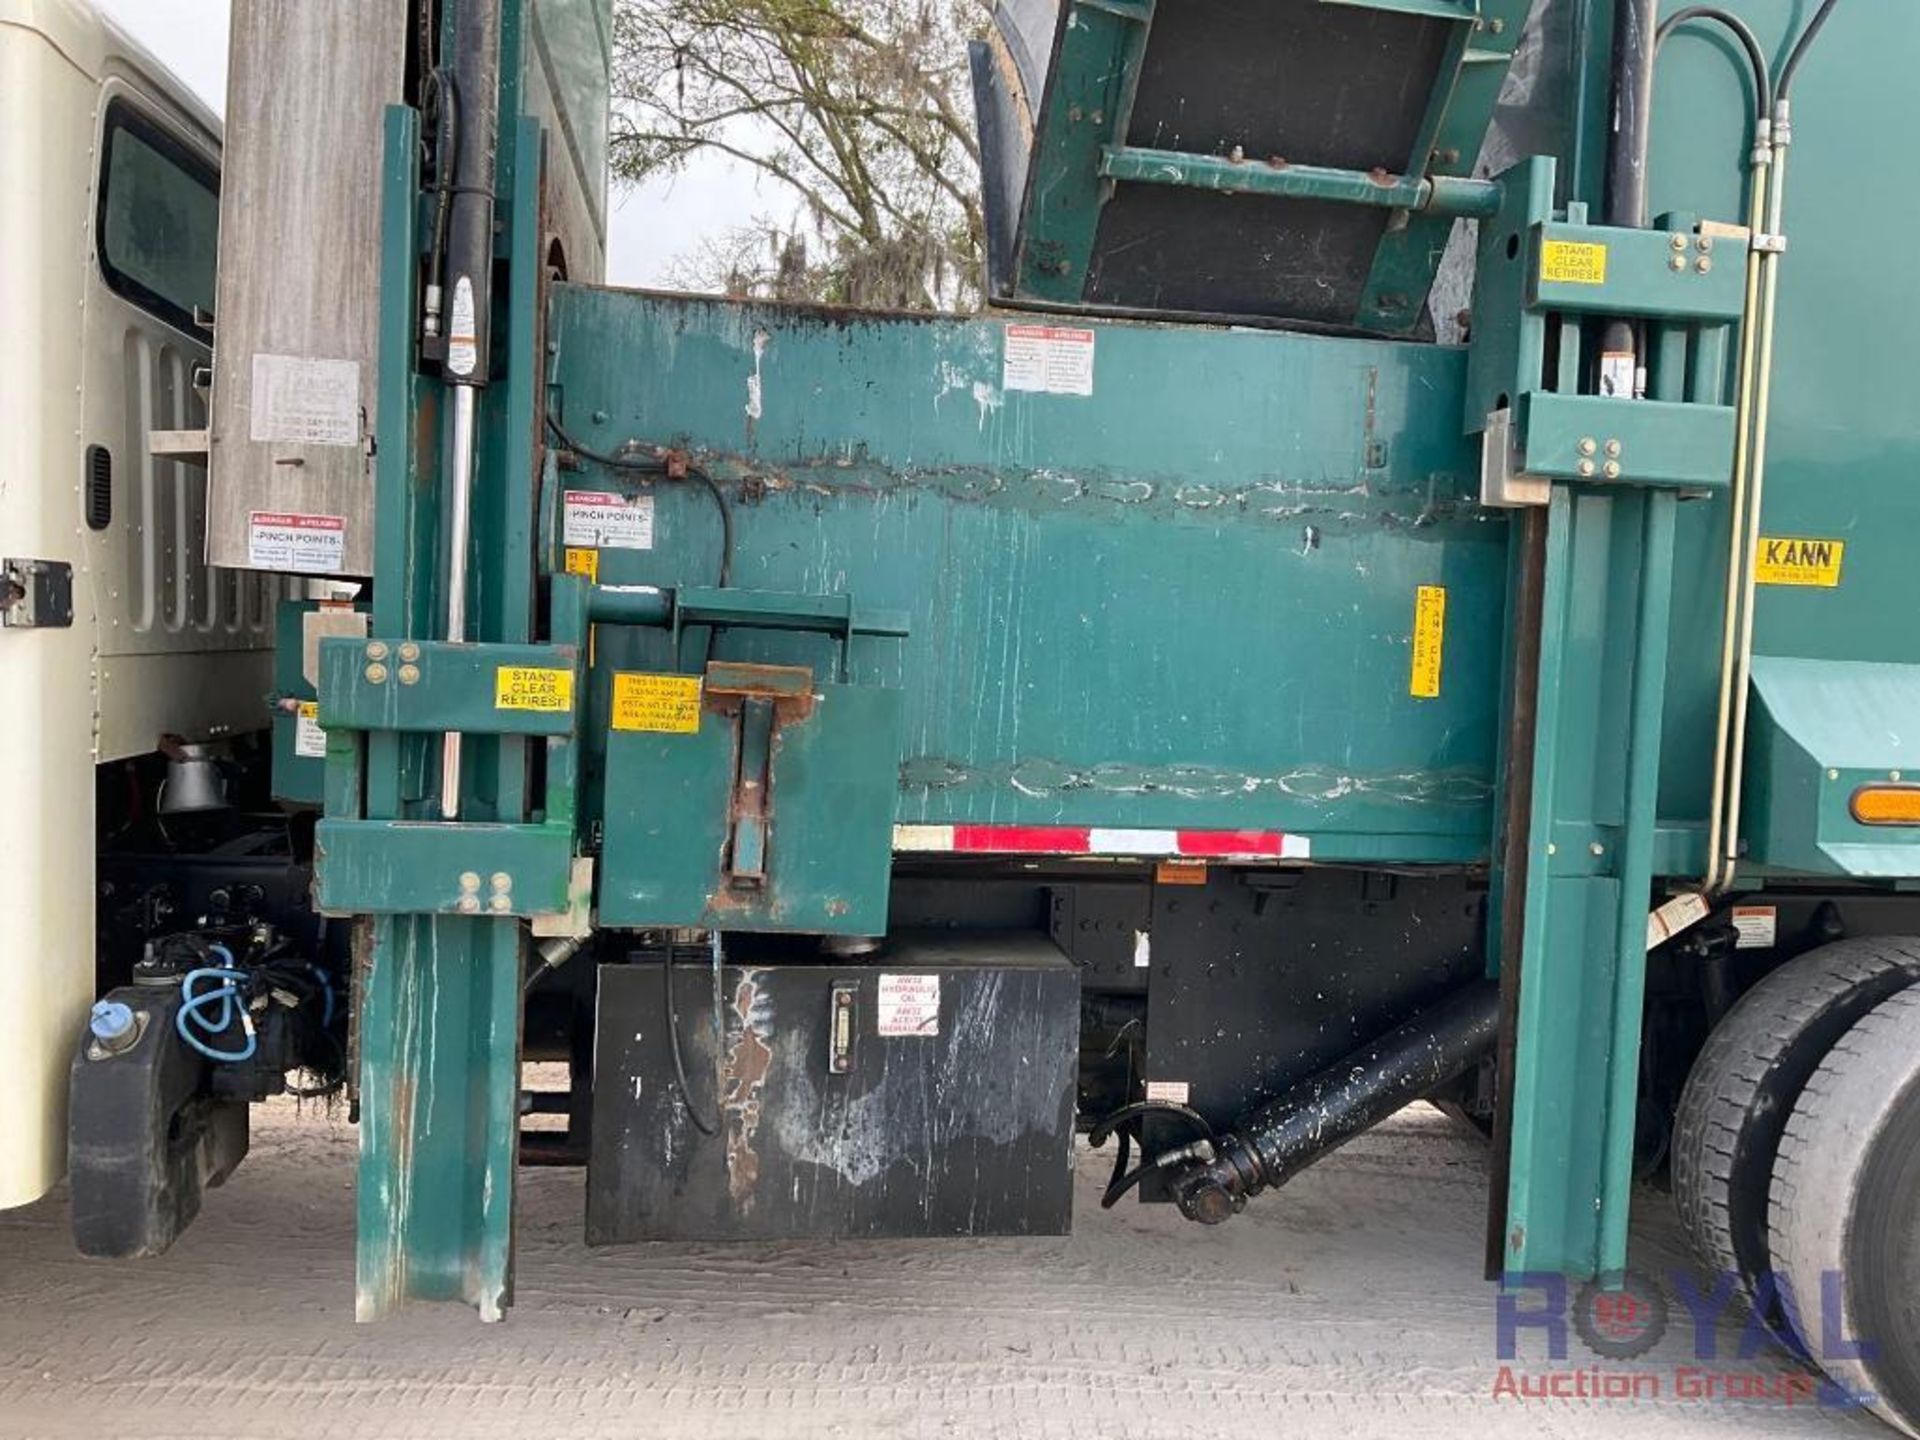 2014 Freightliner M2 106 Side Loader Garbage Truck - Image 17 of 36